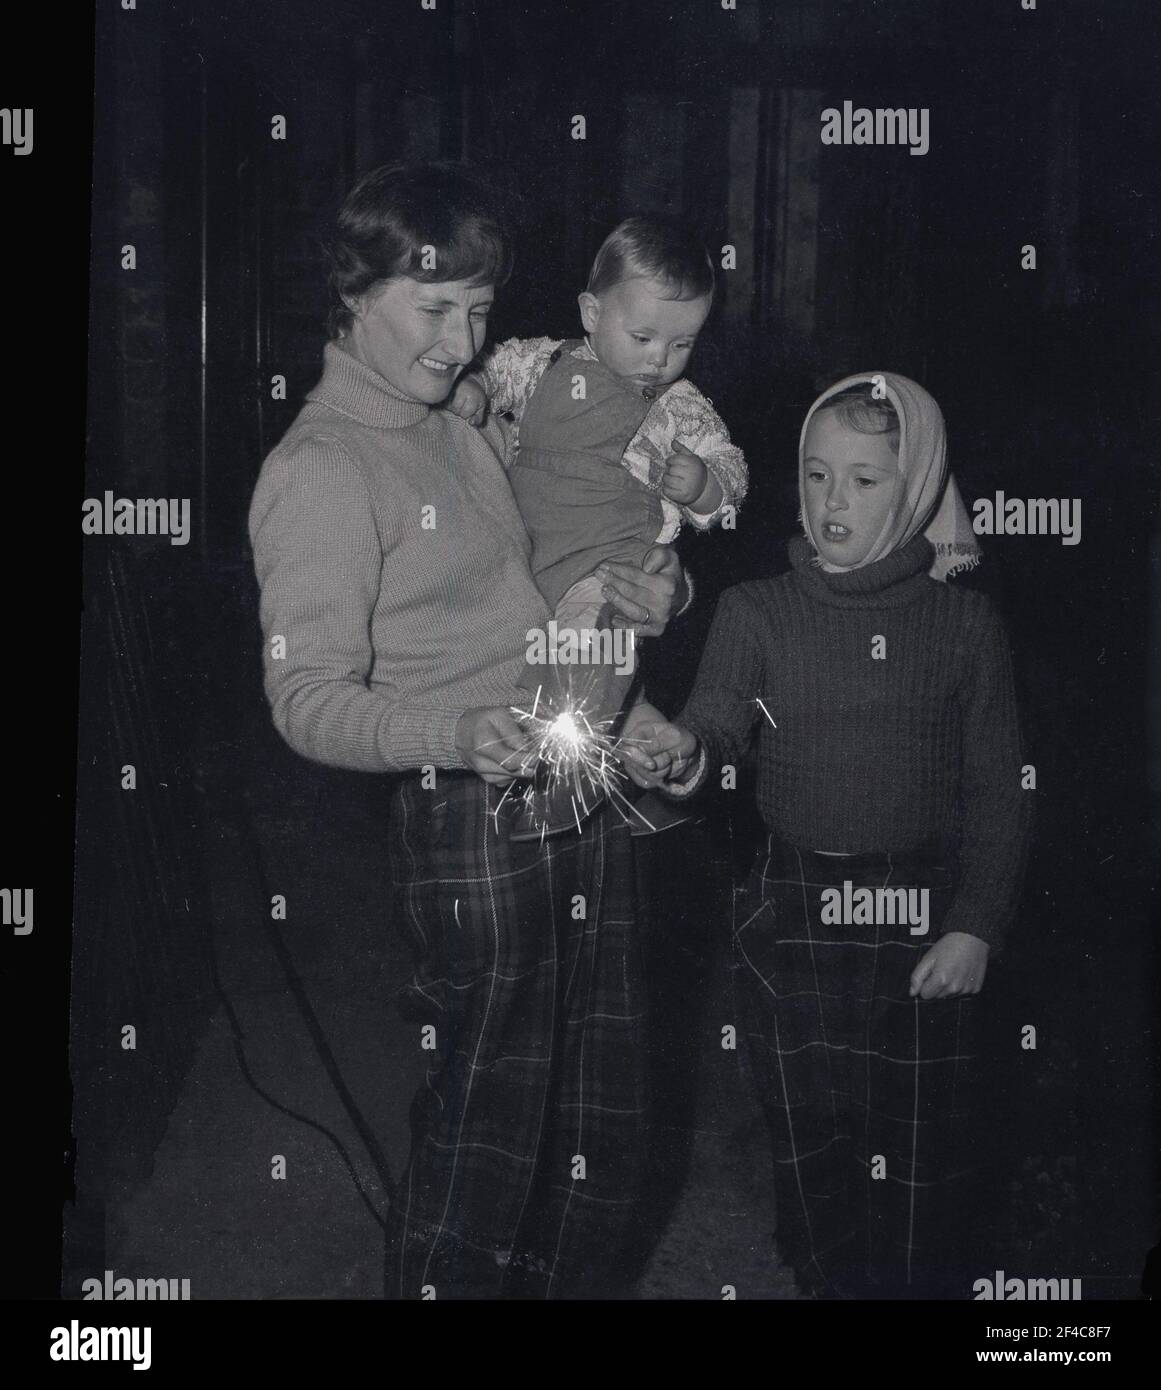 1960s, historische, abendliche und Lagerfeuernacht, und eine Mutter, die ihr Kleinkind in ihrem linken Arm hält und mit Sparkern mit ihrer jüngeren Tochter spielt, die beide eine Tartanhose tragen, Fife, Schottland, Großbritannien. Stockfoto